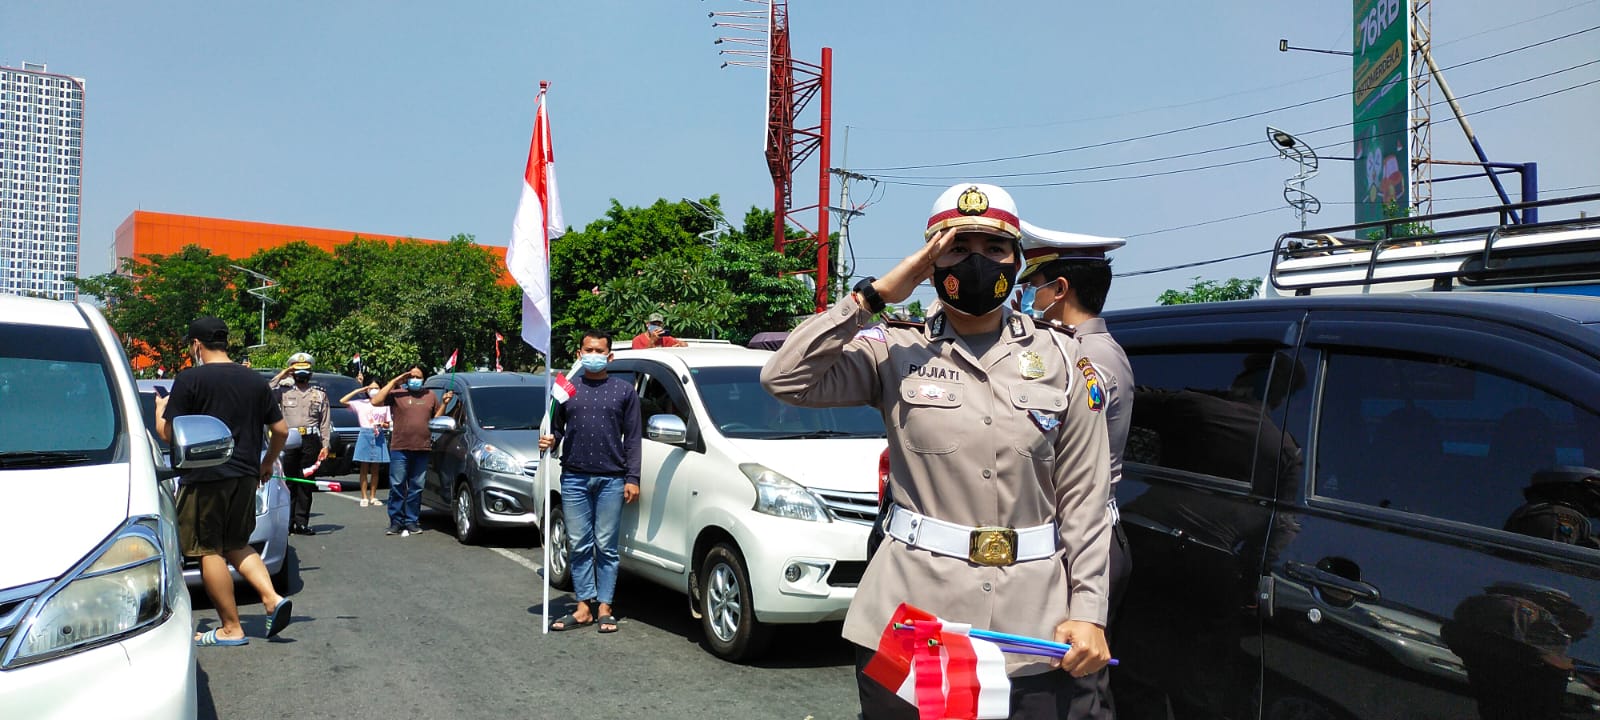 Pengendara diminta berhenti saat detik-detik Proklamasi dan Nyanyikan Lagu Indonesia Raya